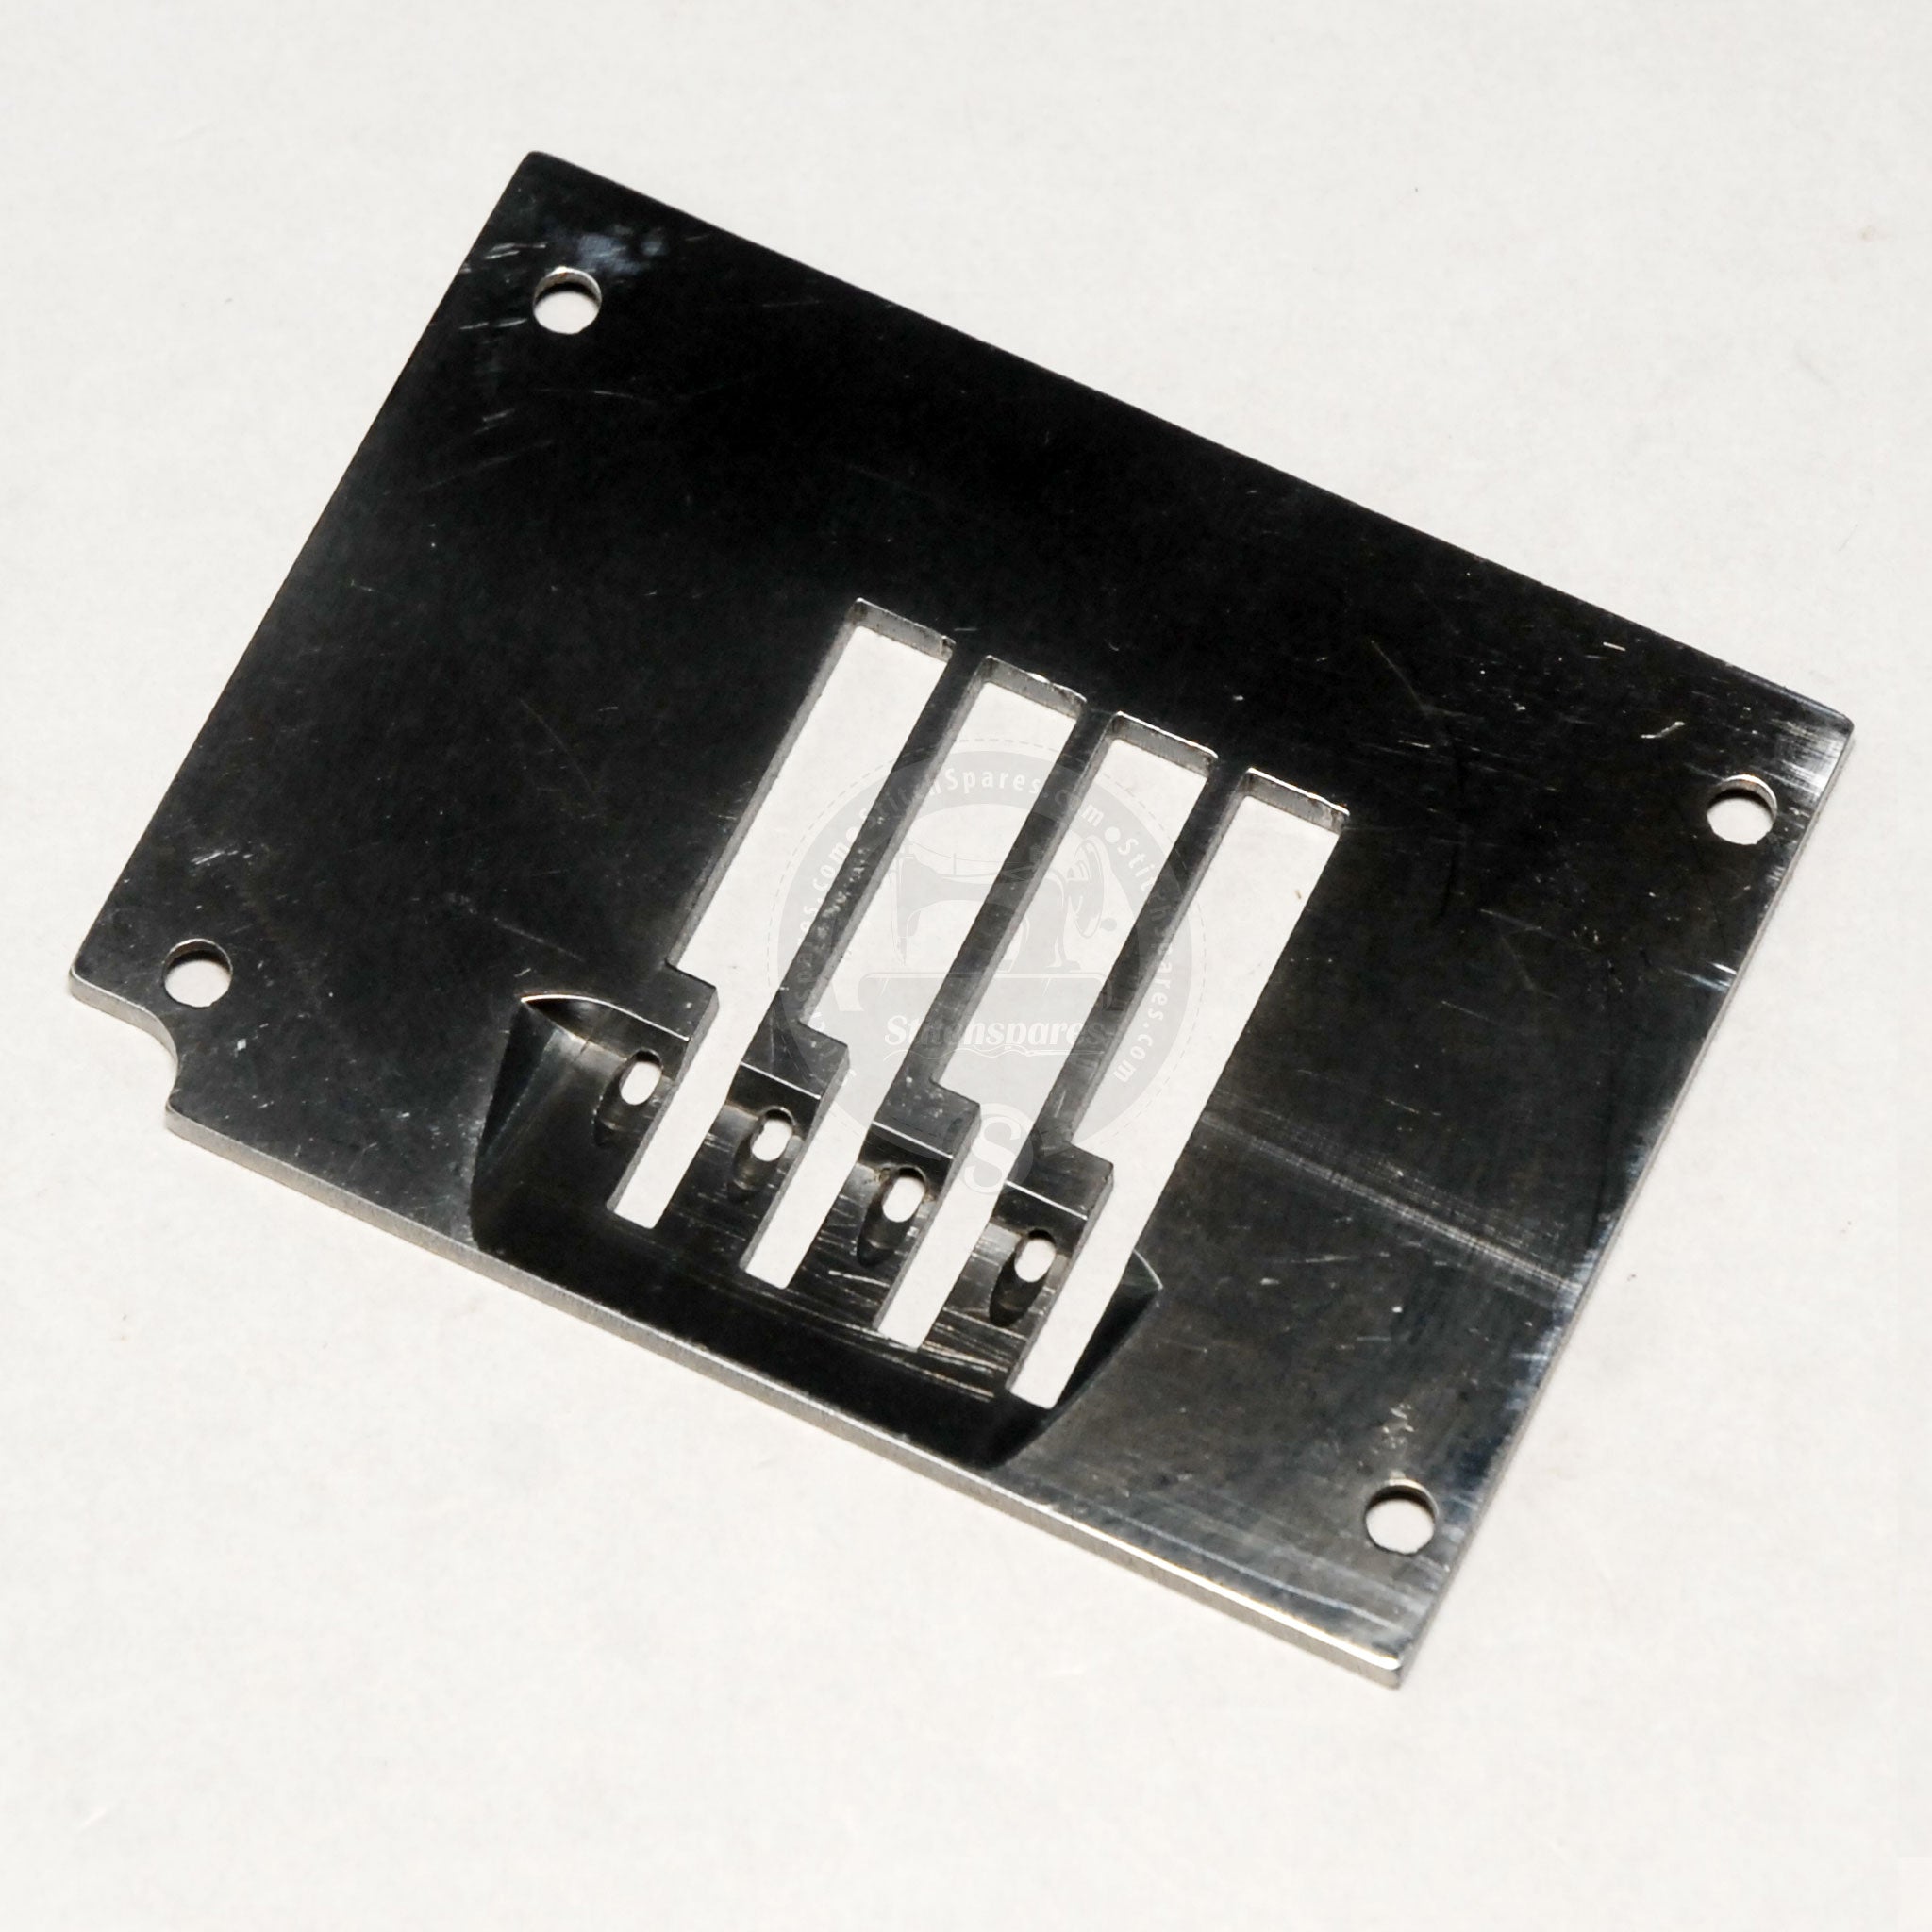 14-421 Placa de aguja 4 Aguja 1 Pieza de repuesto para máquina elástica de agujas múltiples